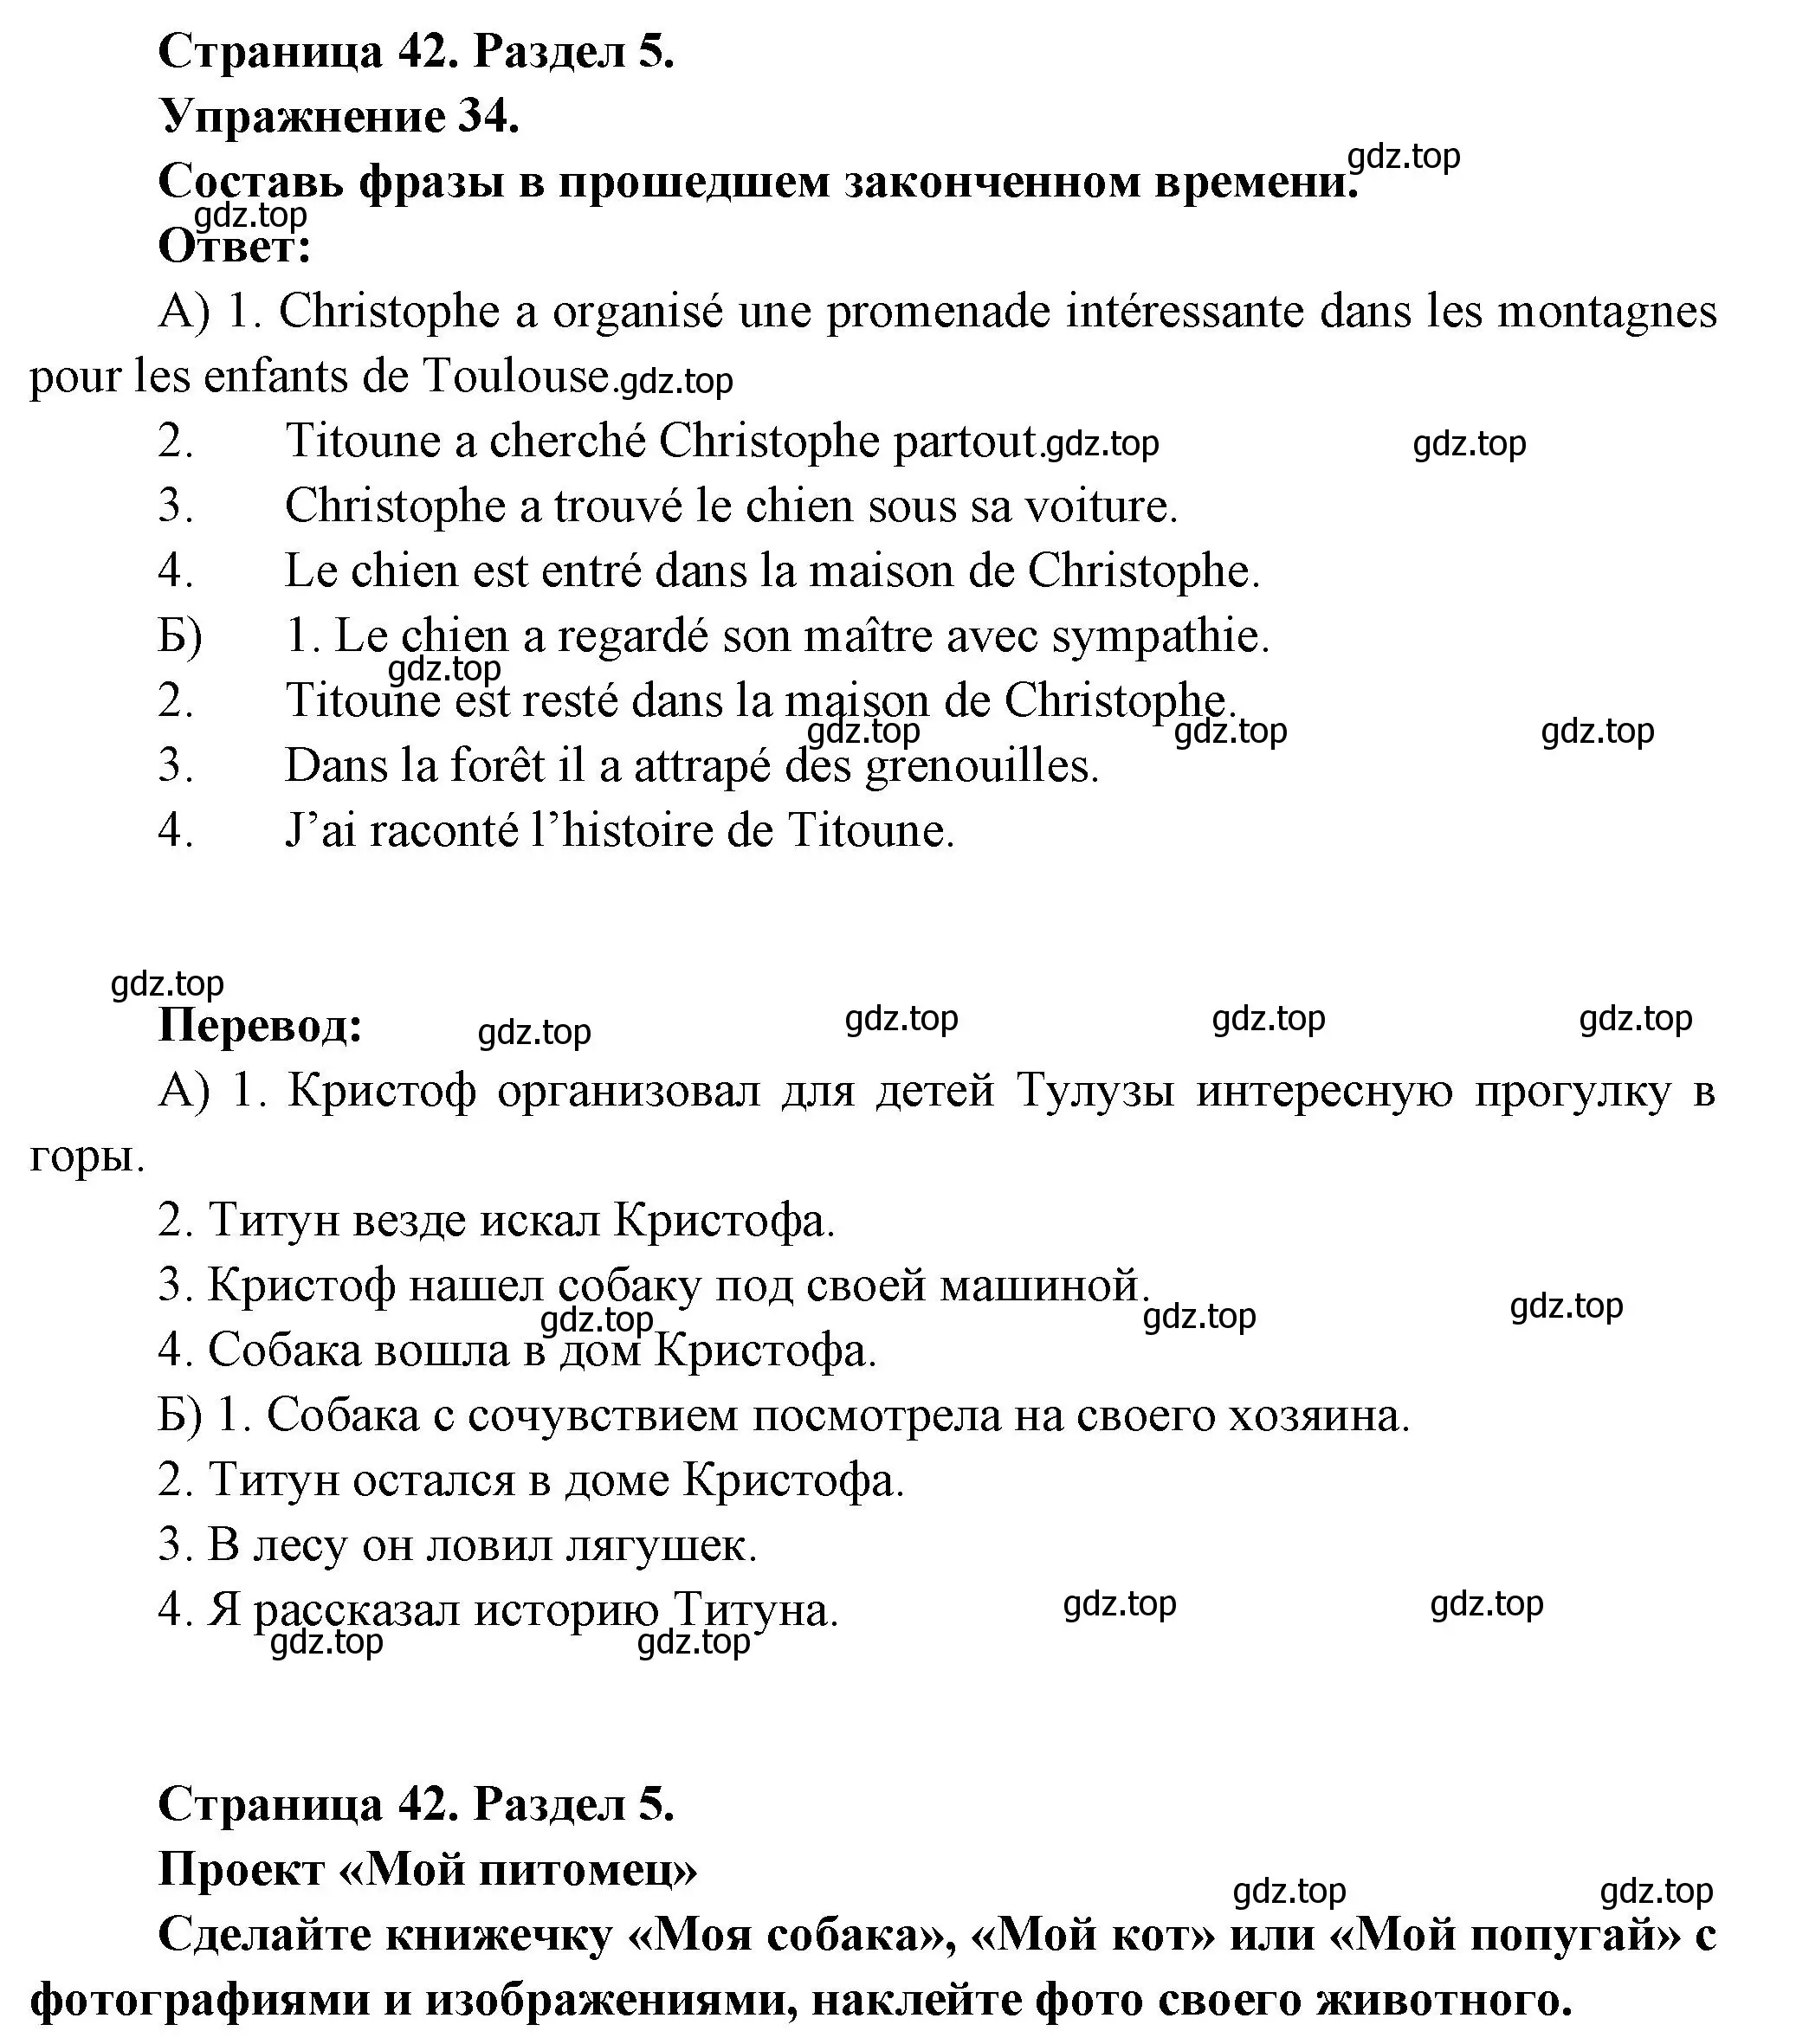 Решение номер 34 (страница 42) гдз по французскому языку 5 класс Береговская, Белосельская, учебник 2 часть